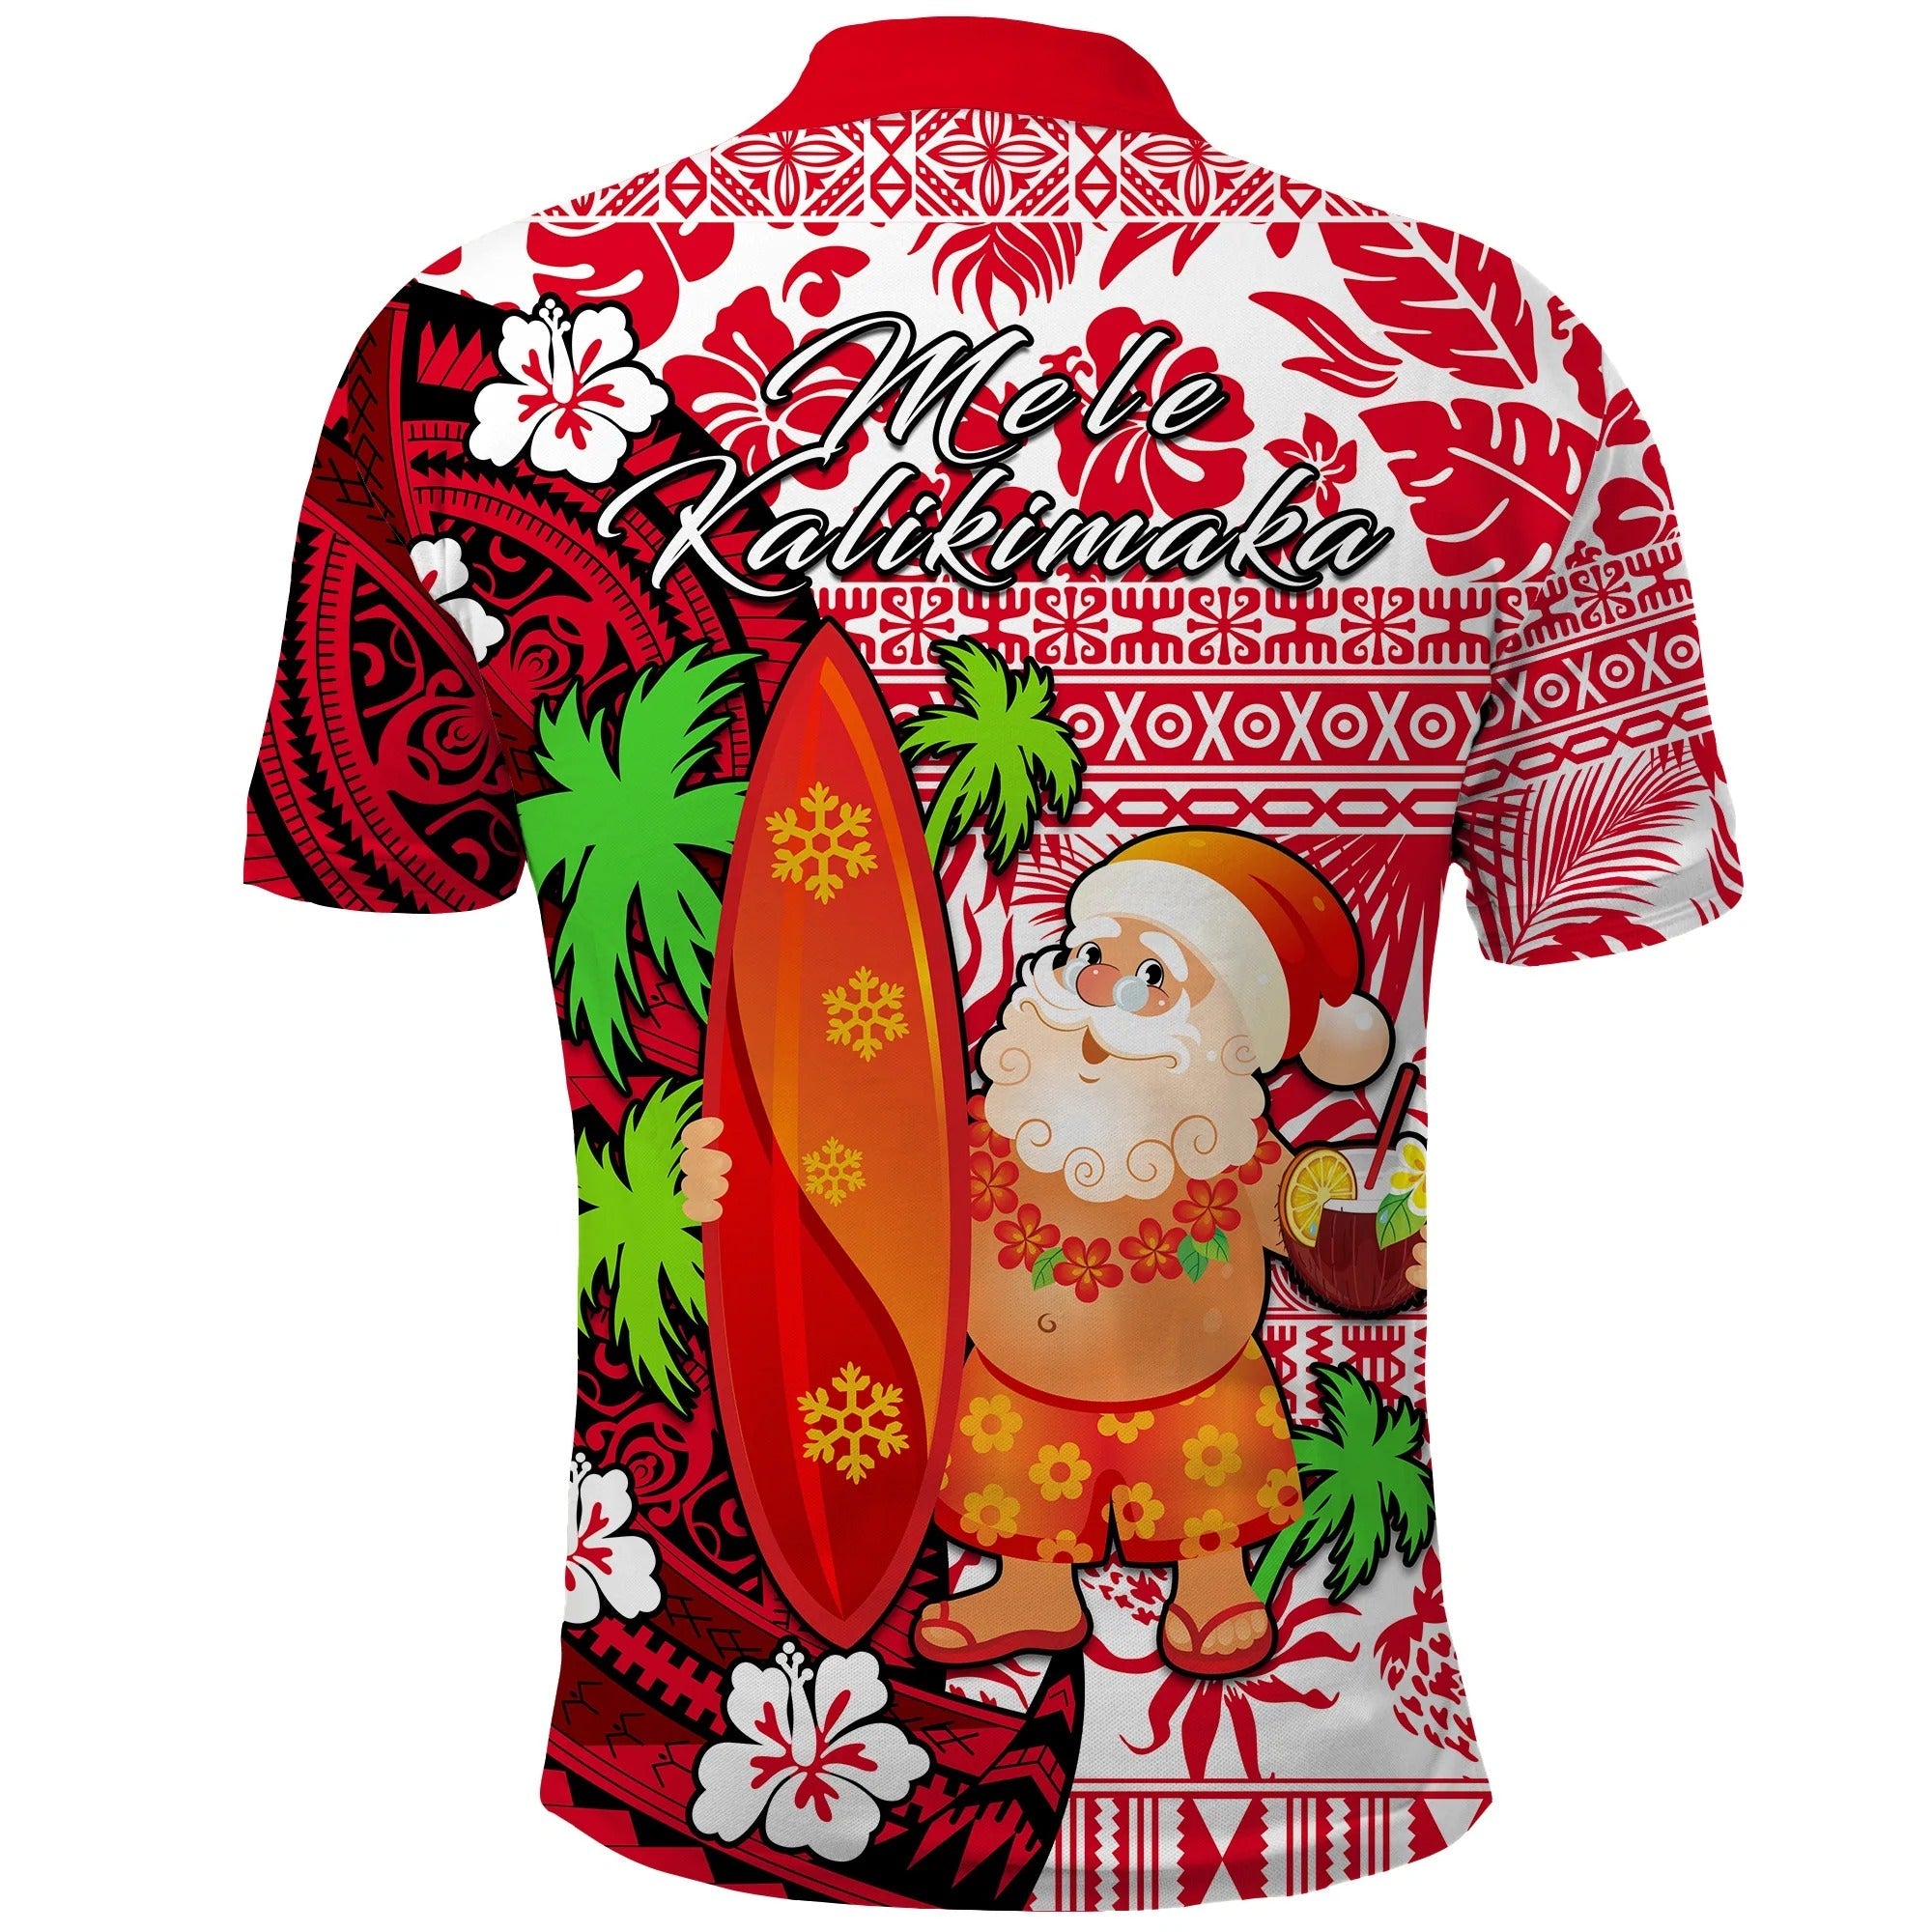 Mele Kalikimaka Polo Shirt Christmas Hawaii with Santa Claus/ Christmas Polo Shirts For Men Women